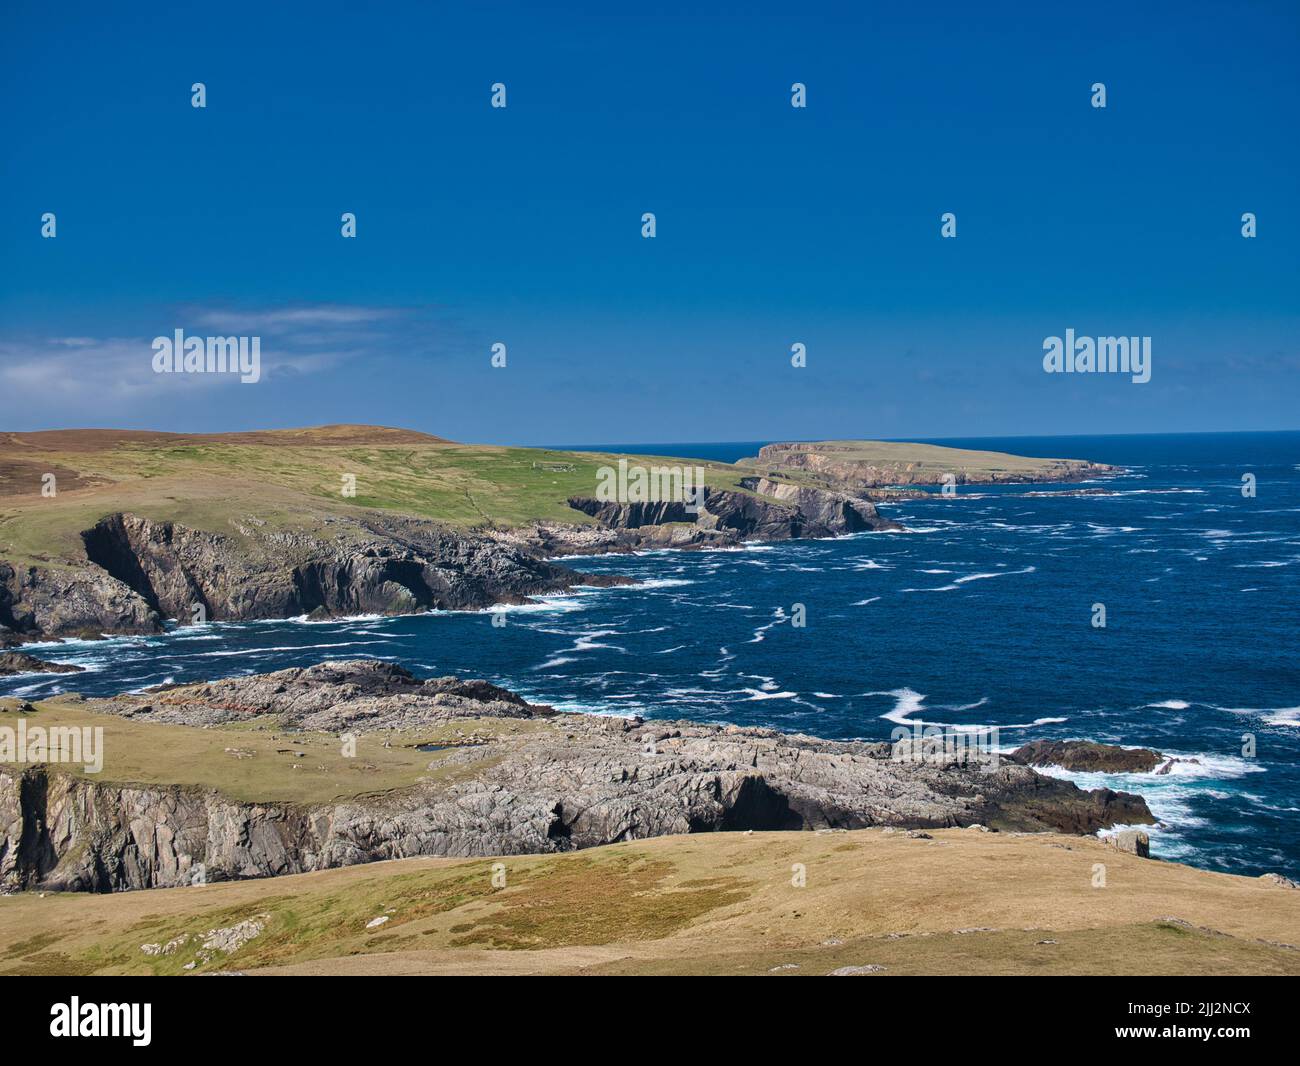 El escarpado paisaje de acantilados costeros y las prístinas aguas de color turquesa alrededor de la isla de Uyea en Northmavine, Shetland, Reino Unido. Foto de stock